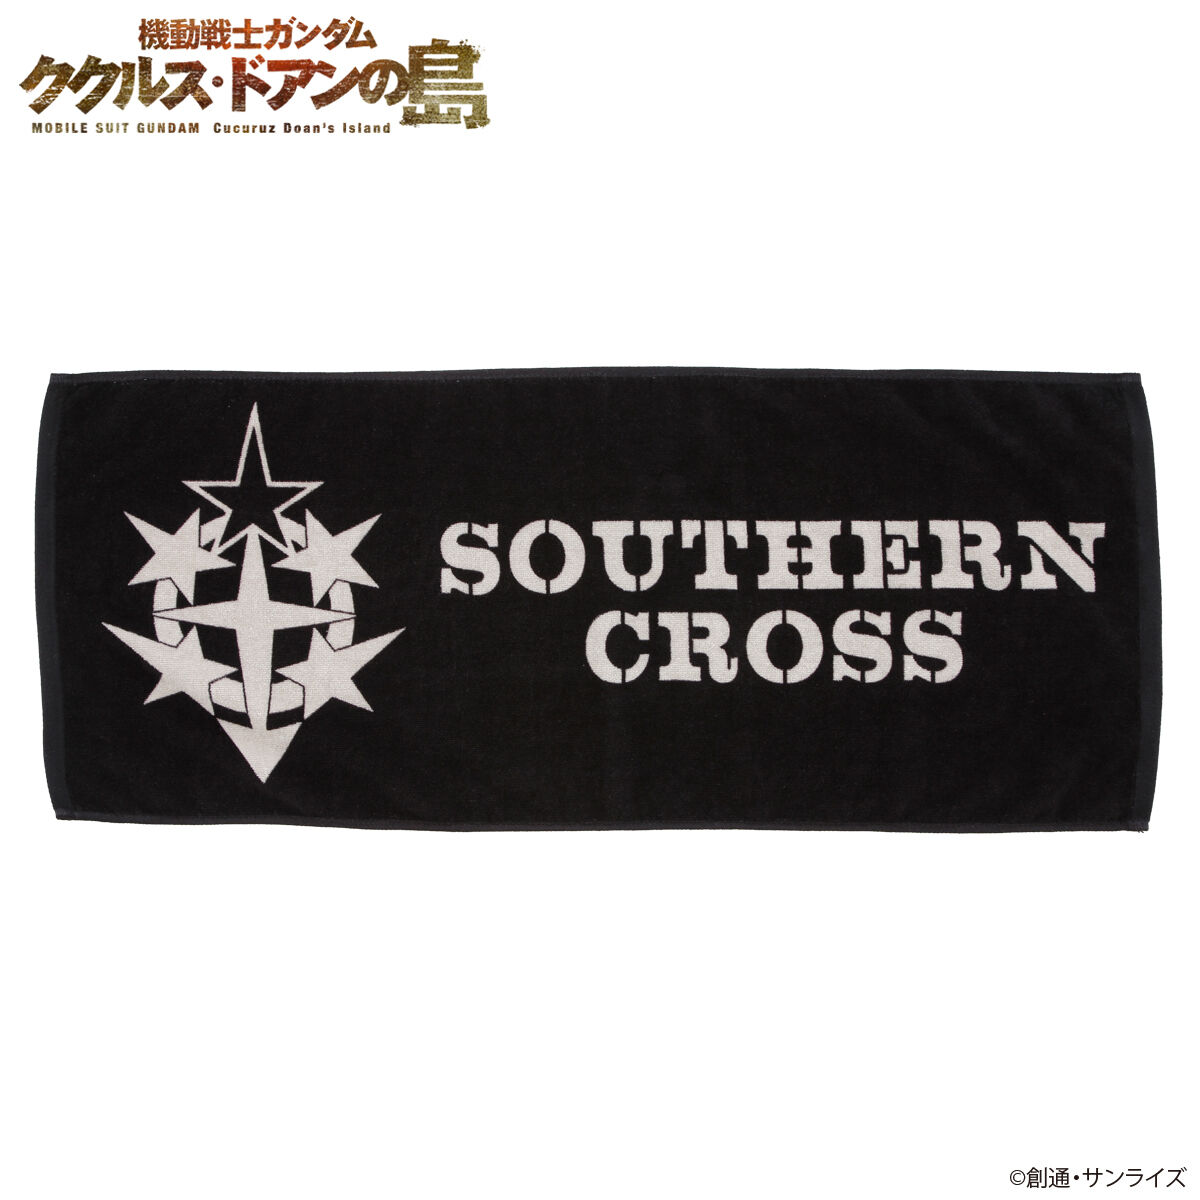 Mobile Suit Gundam Cucuruz: Doan's Island BLACK Series Southern Cross Corps Face Towel